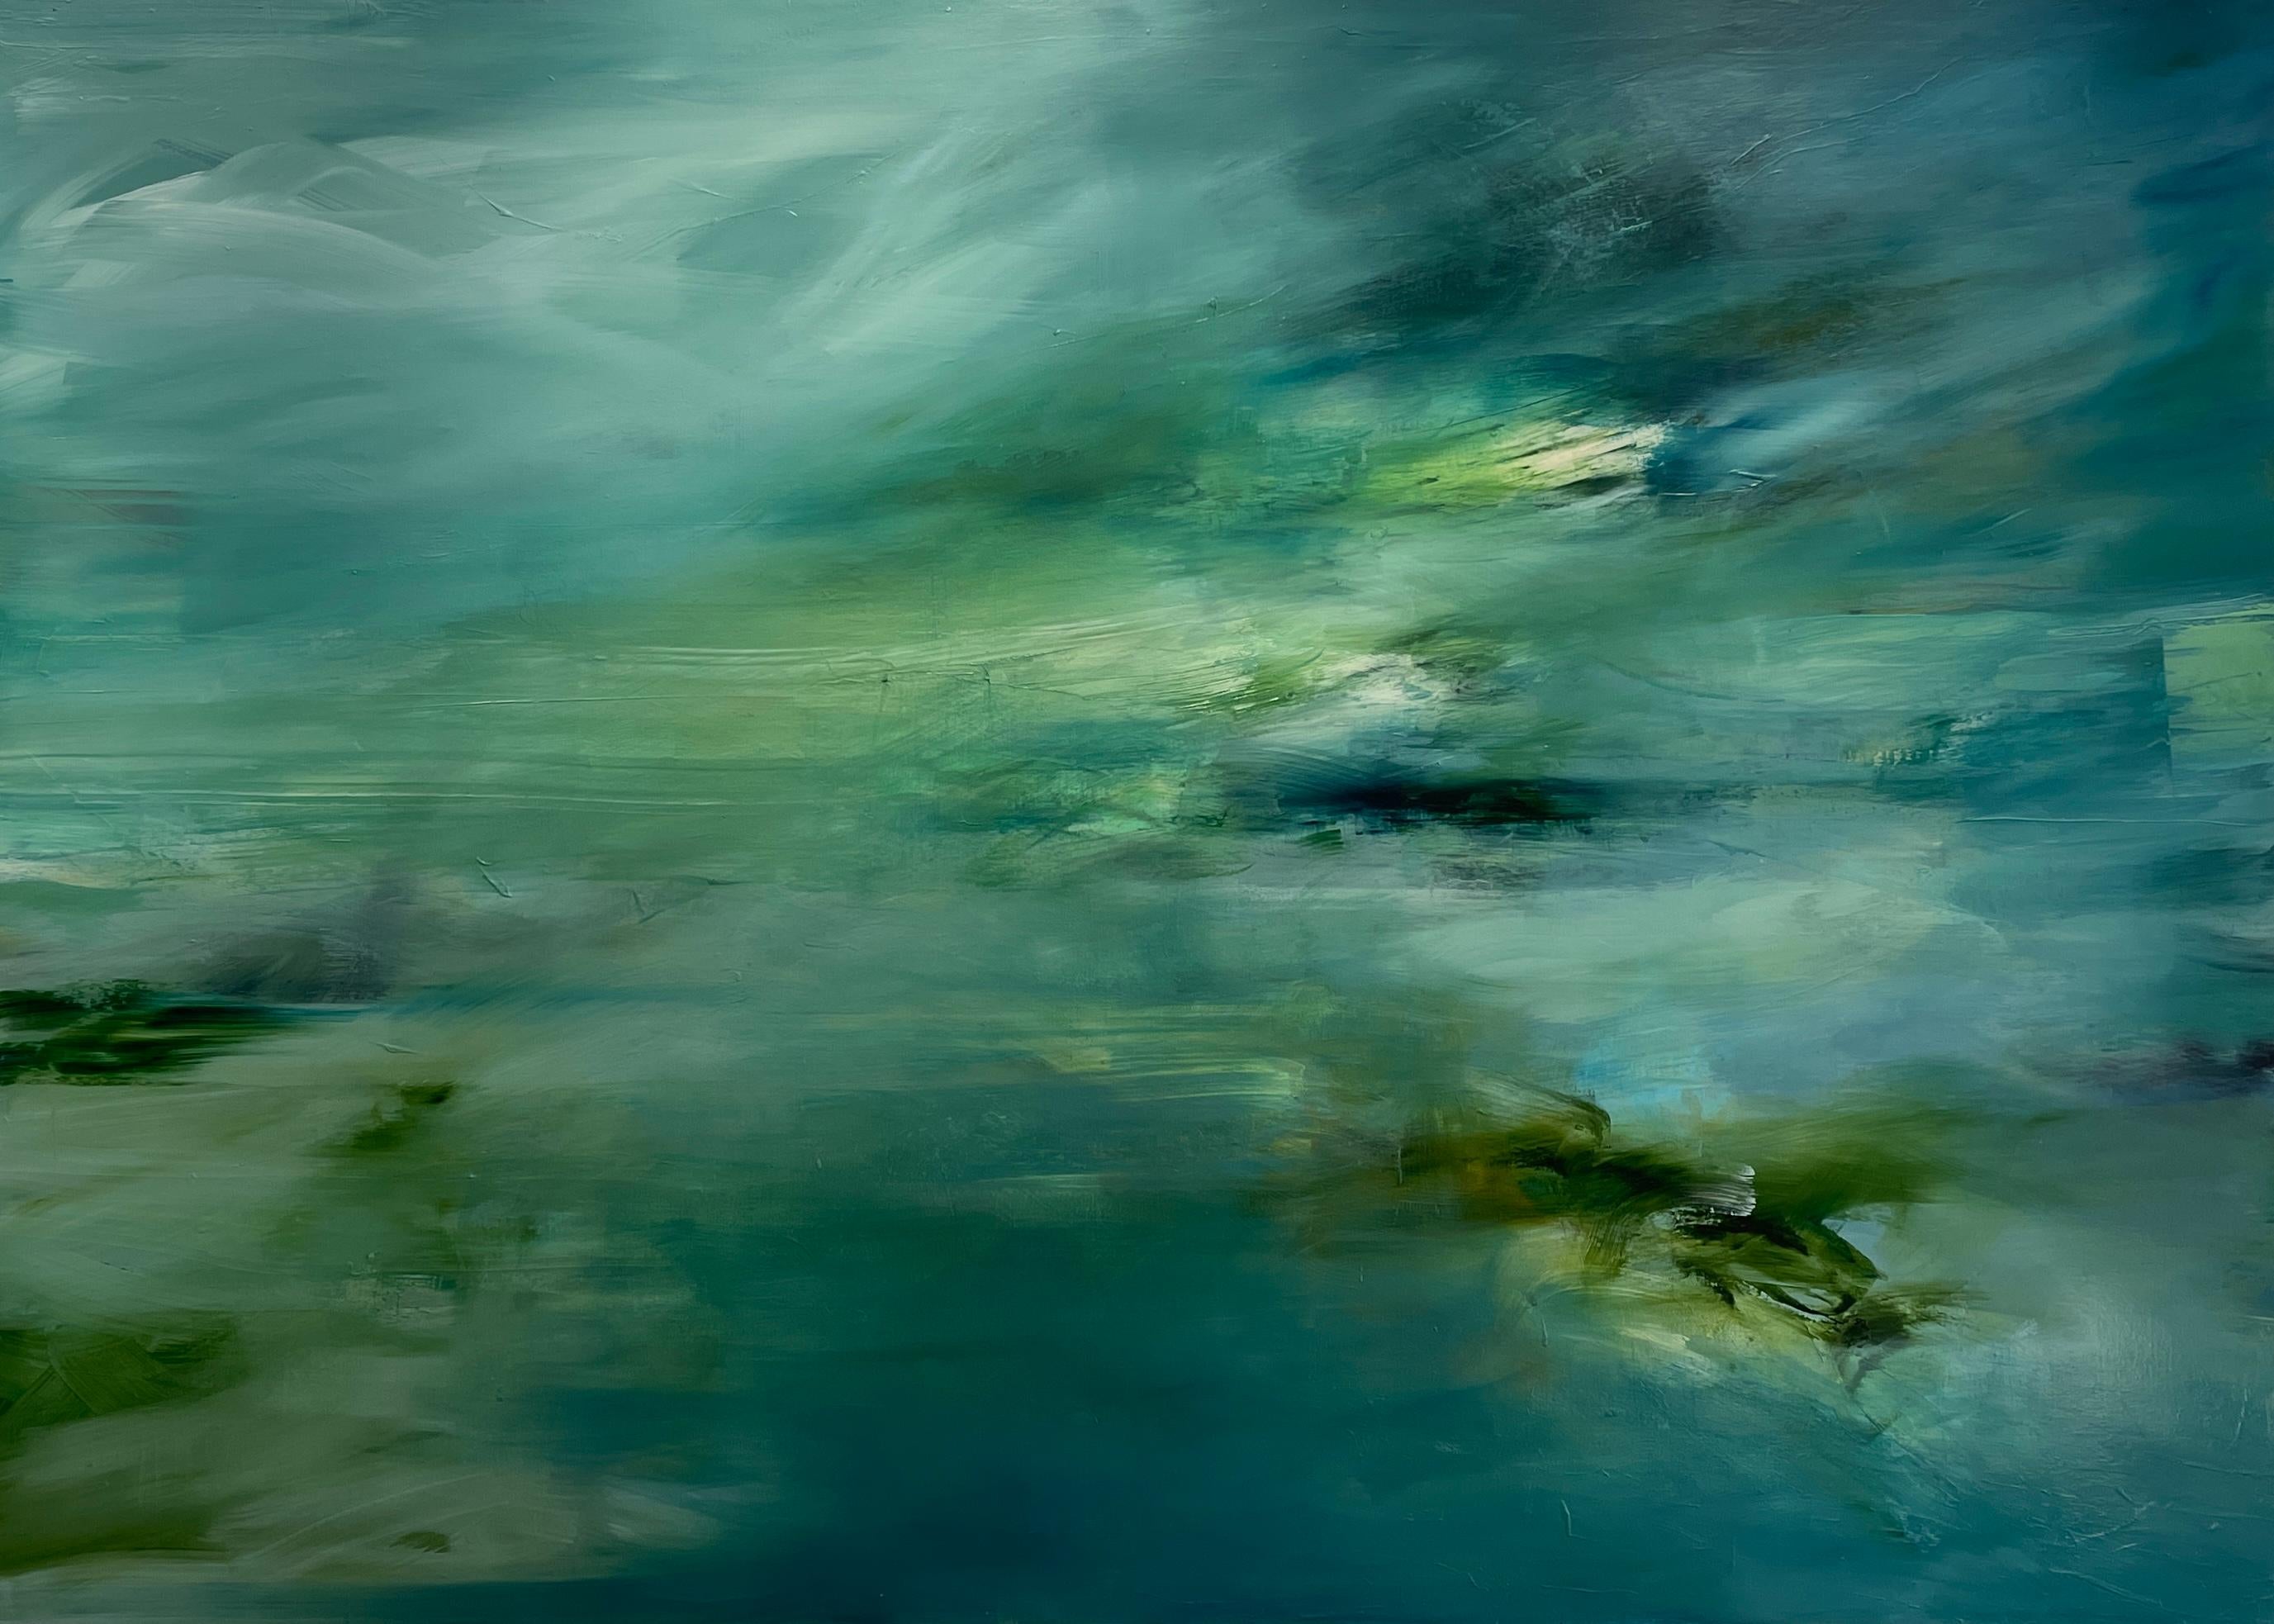 Landscape Painting Katheryn Holt - "Sea Garden 2" Très grand paysage marin expressionniste abstrait en techniques mixtes sur toile